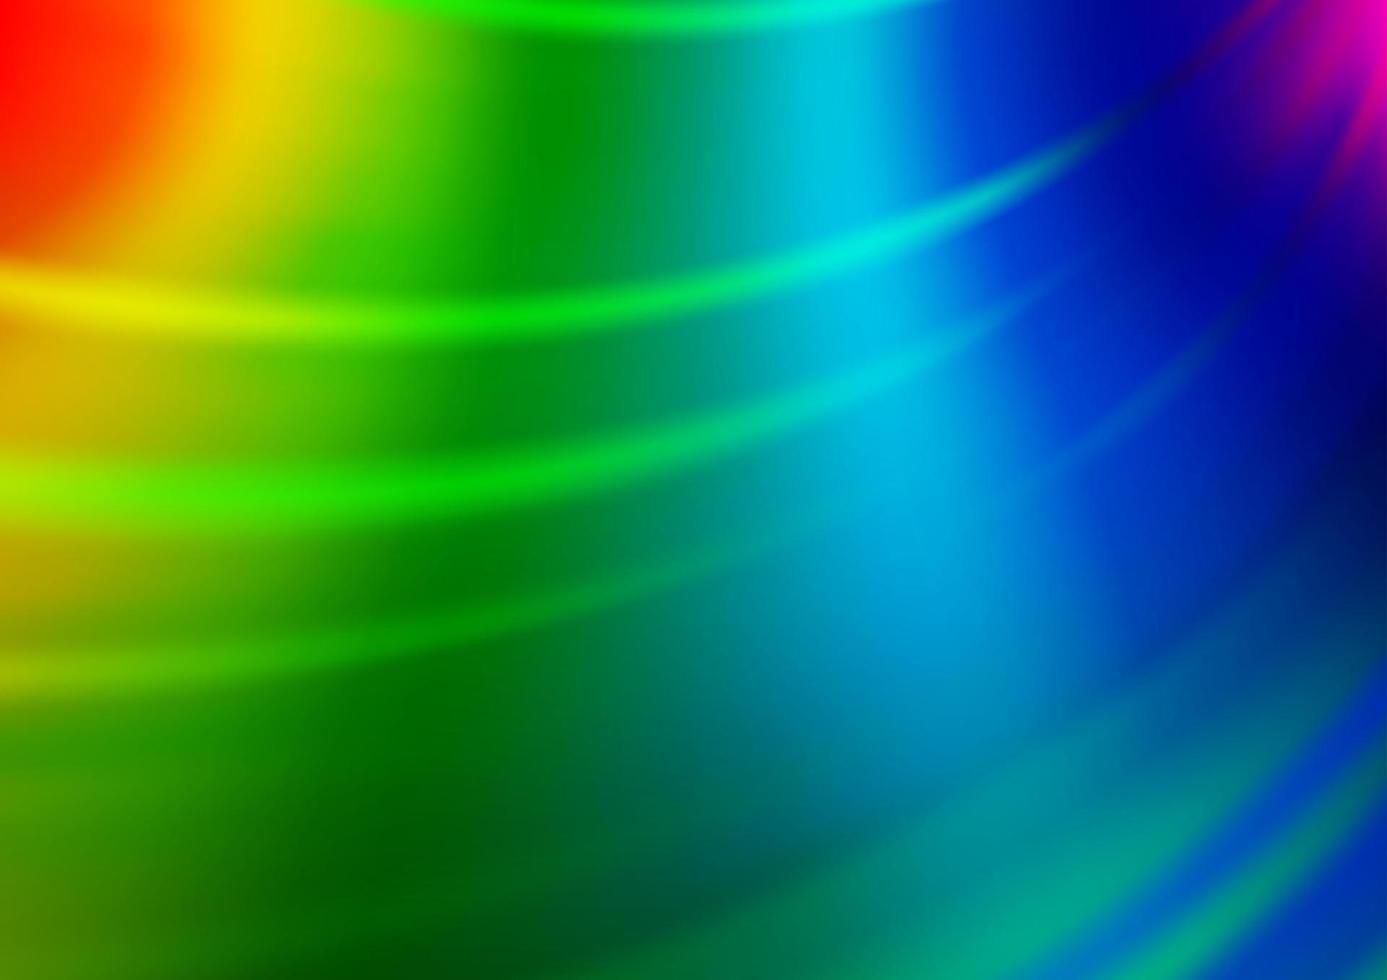 ljus mångfärgad, regnbåge vektor abstrakt ljus bakgrund.